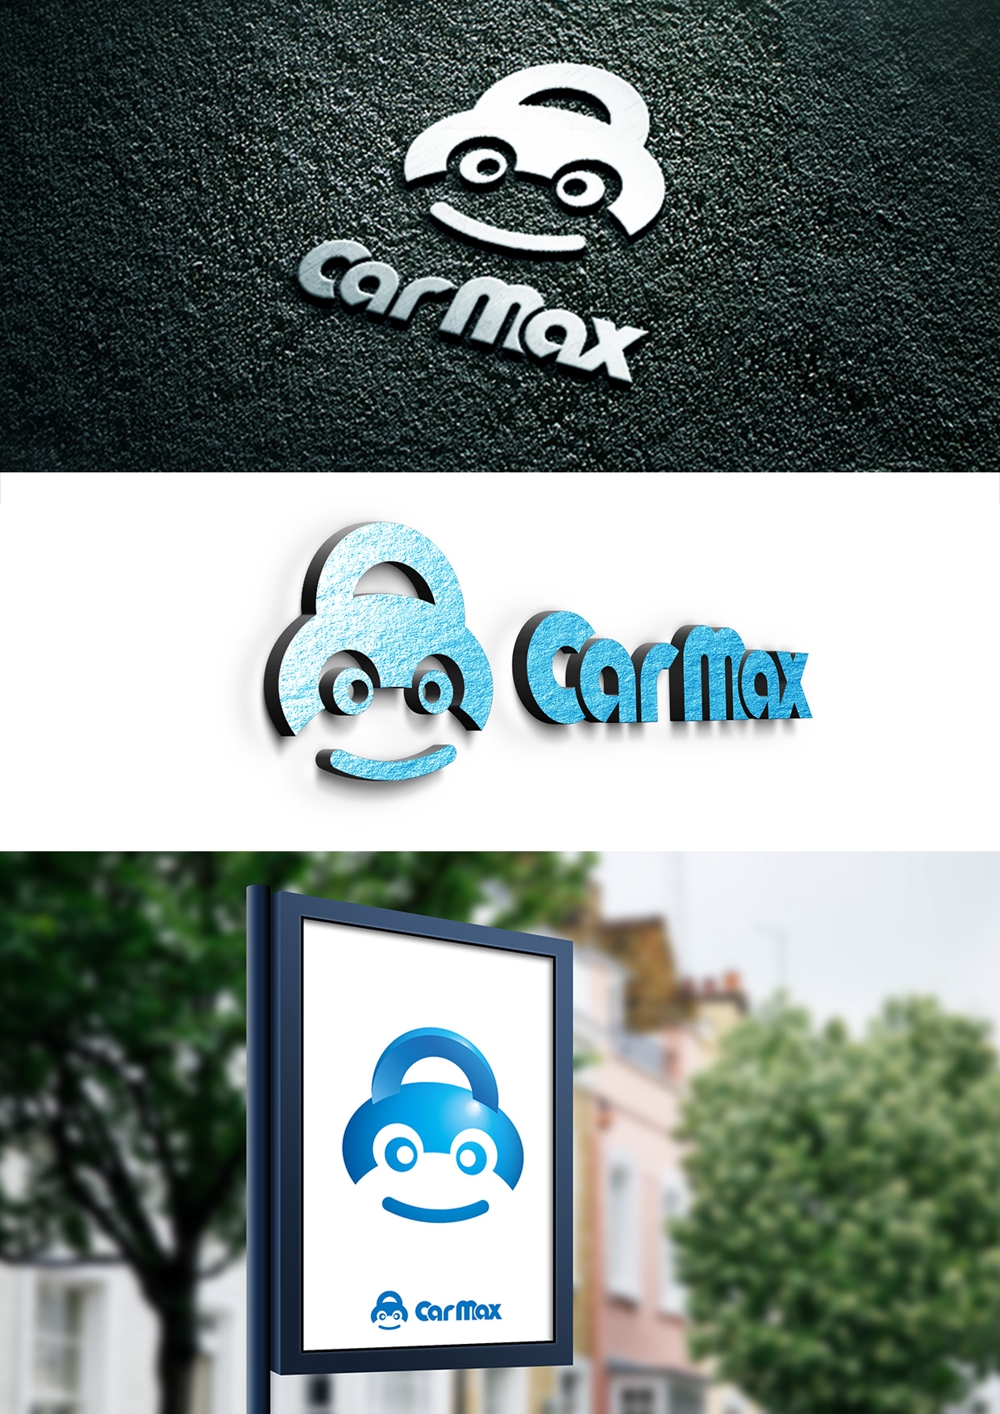 車買い取り、販売店 【Car Max】  ロゴ